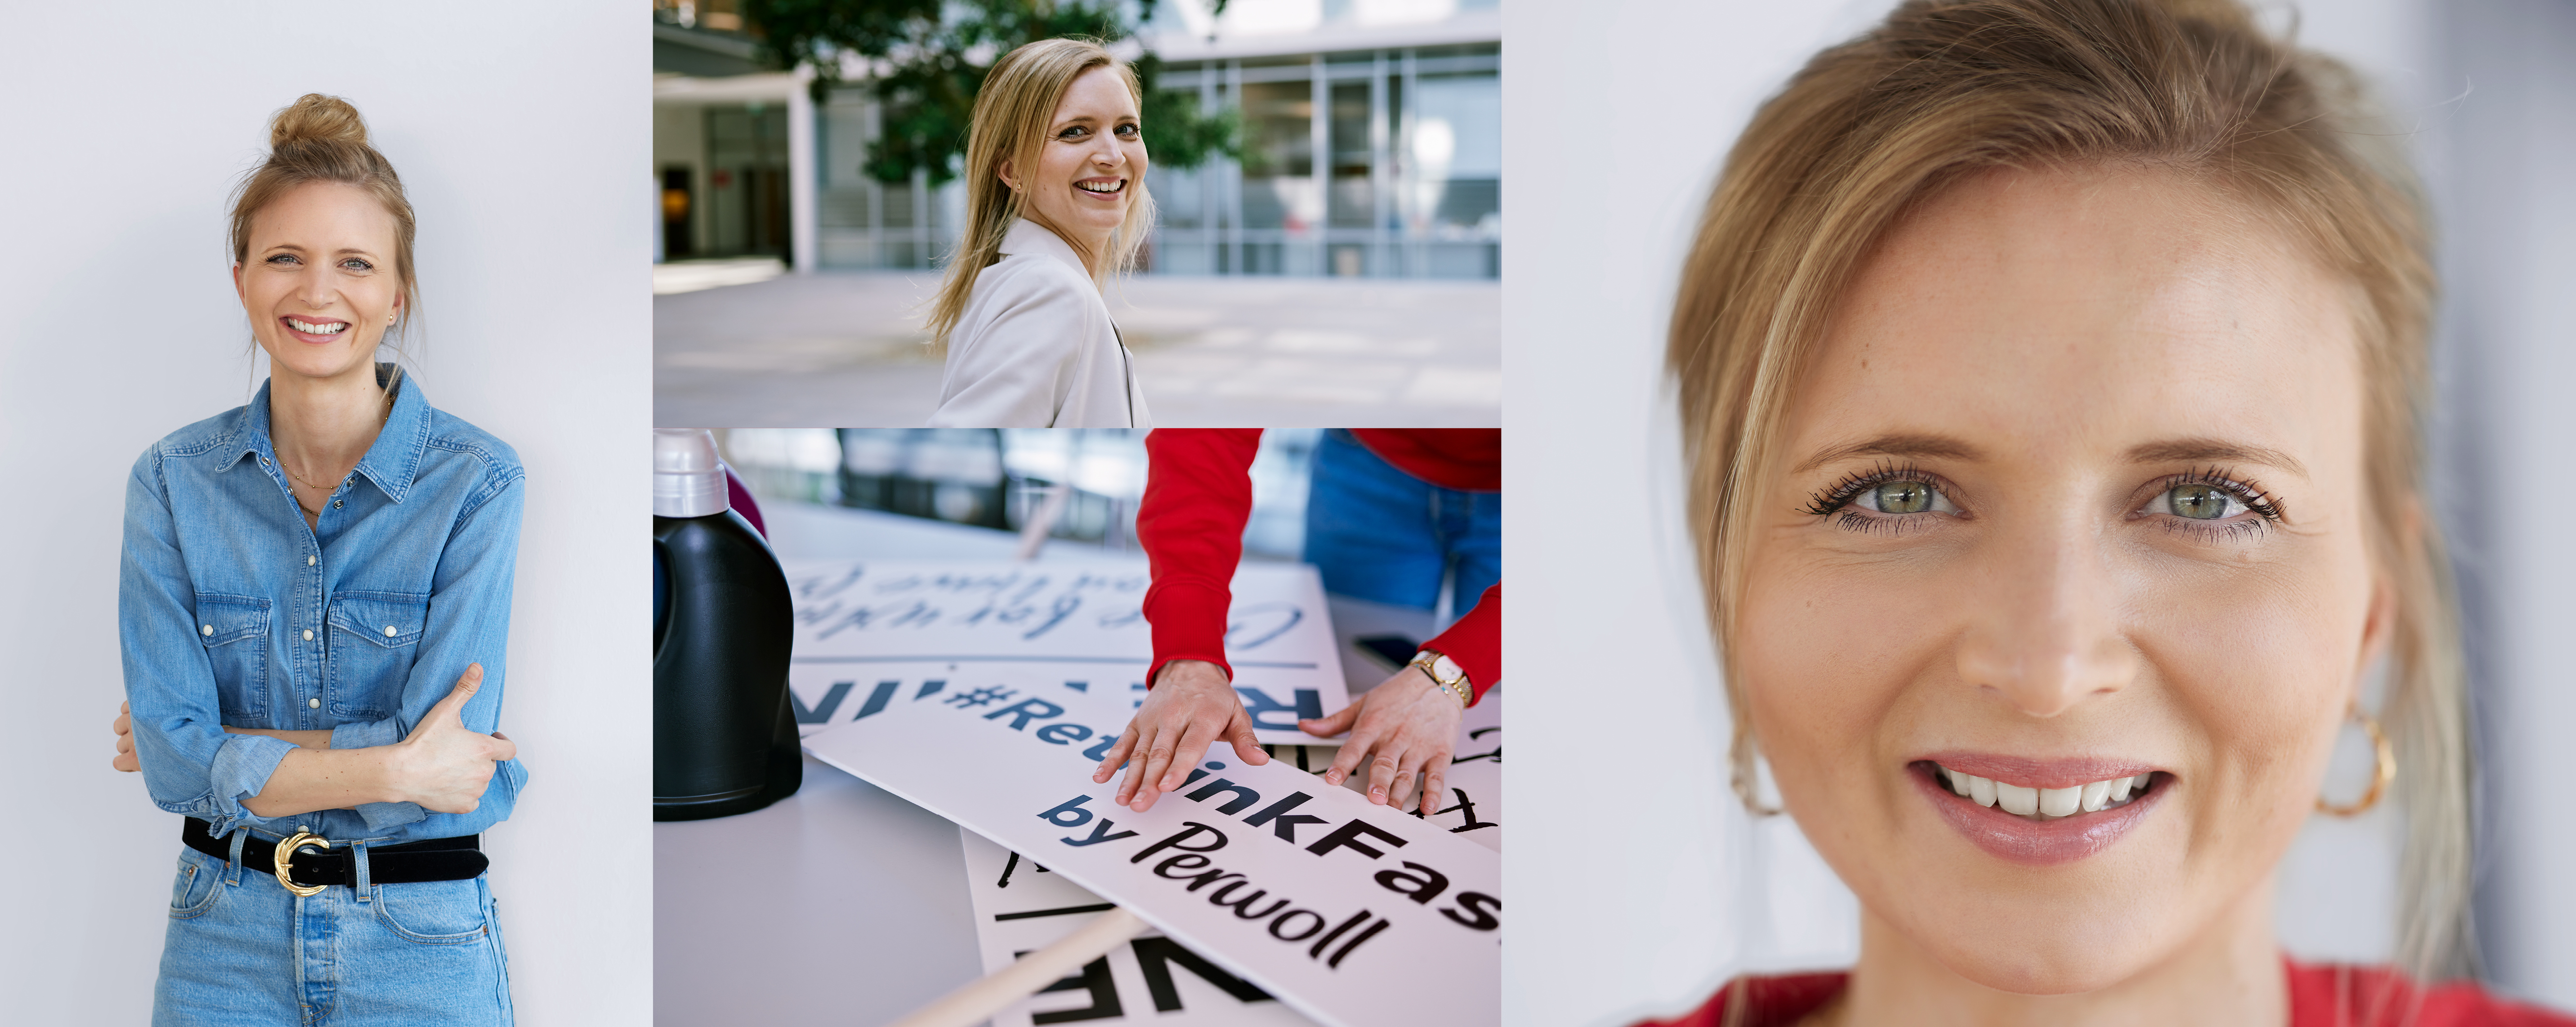 Una empleada de Henkel delante de su lugar de trabajo. Posa para la cámara, ordena los carteles de la campaña #Rethink Fashion de Persil, y está sonriendo.